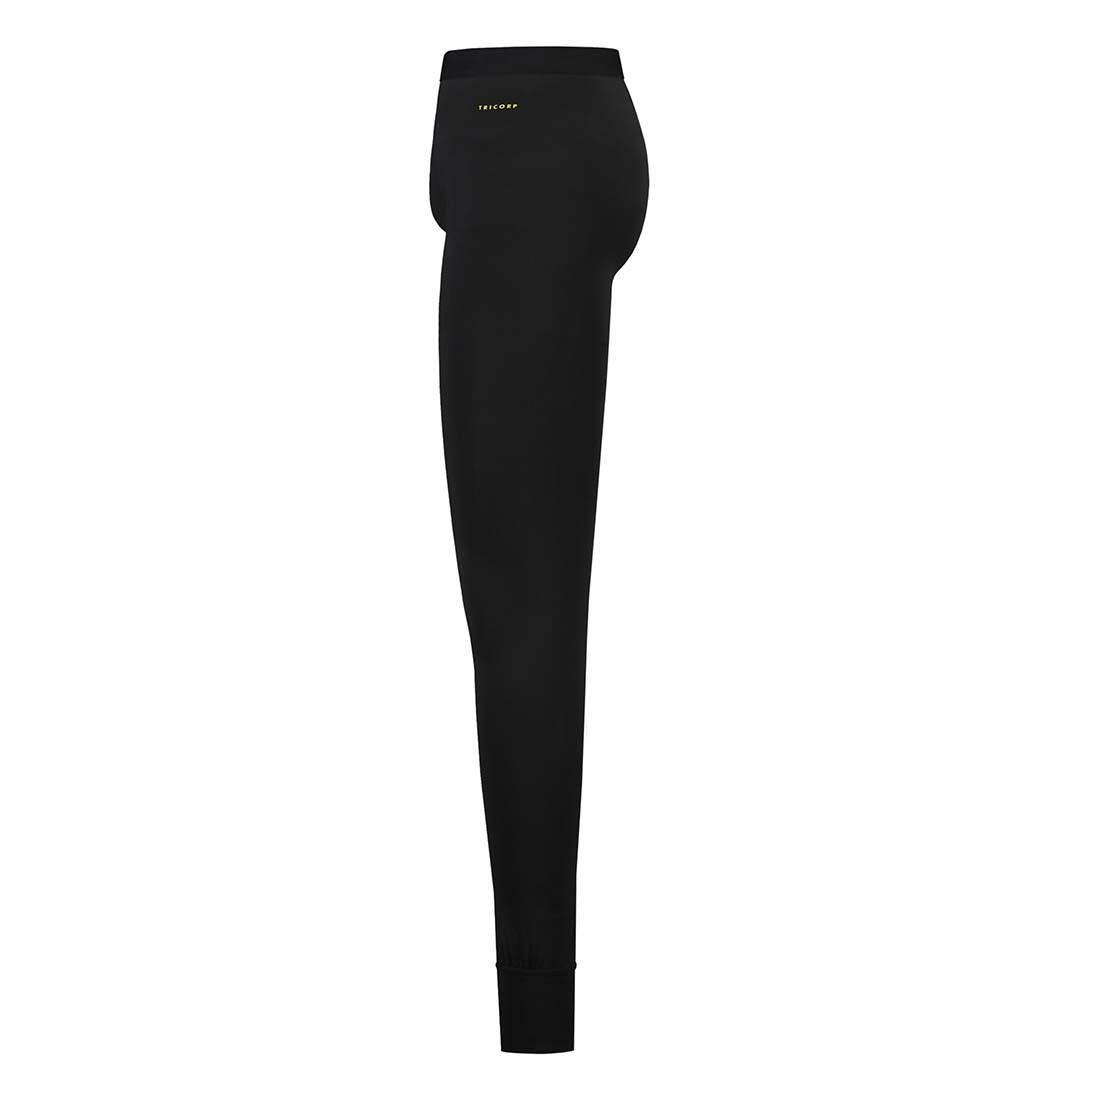 Pantaloni termici unisex - Abbigliamento di protezione